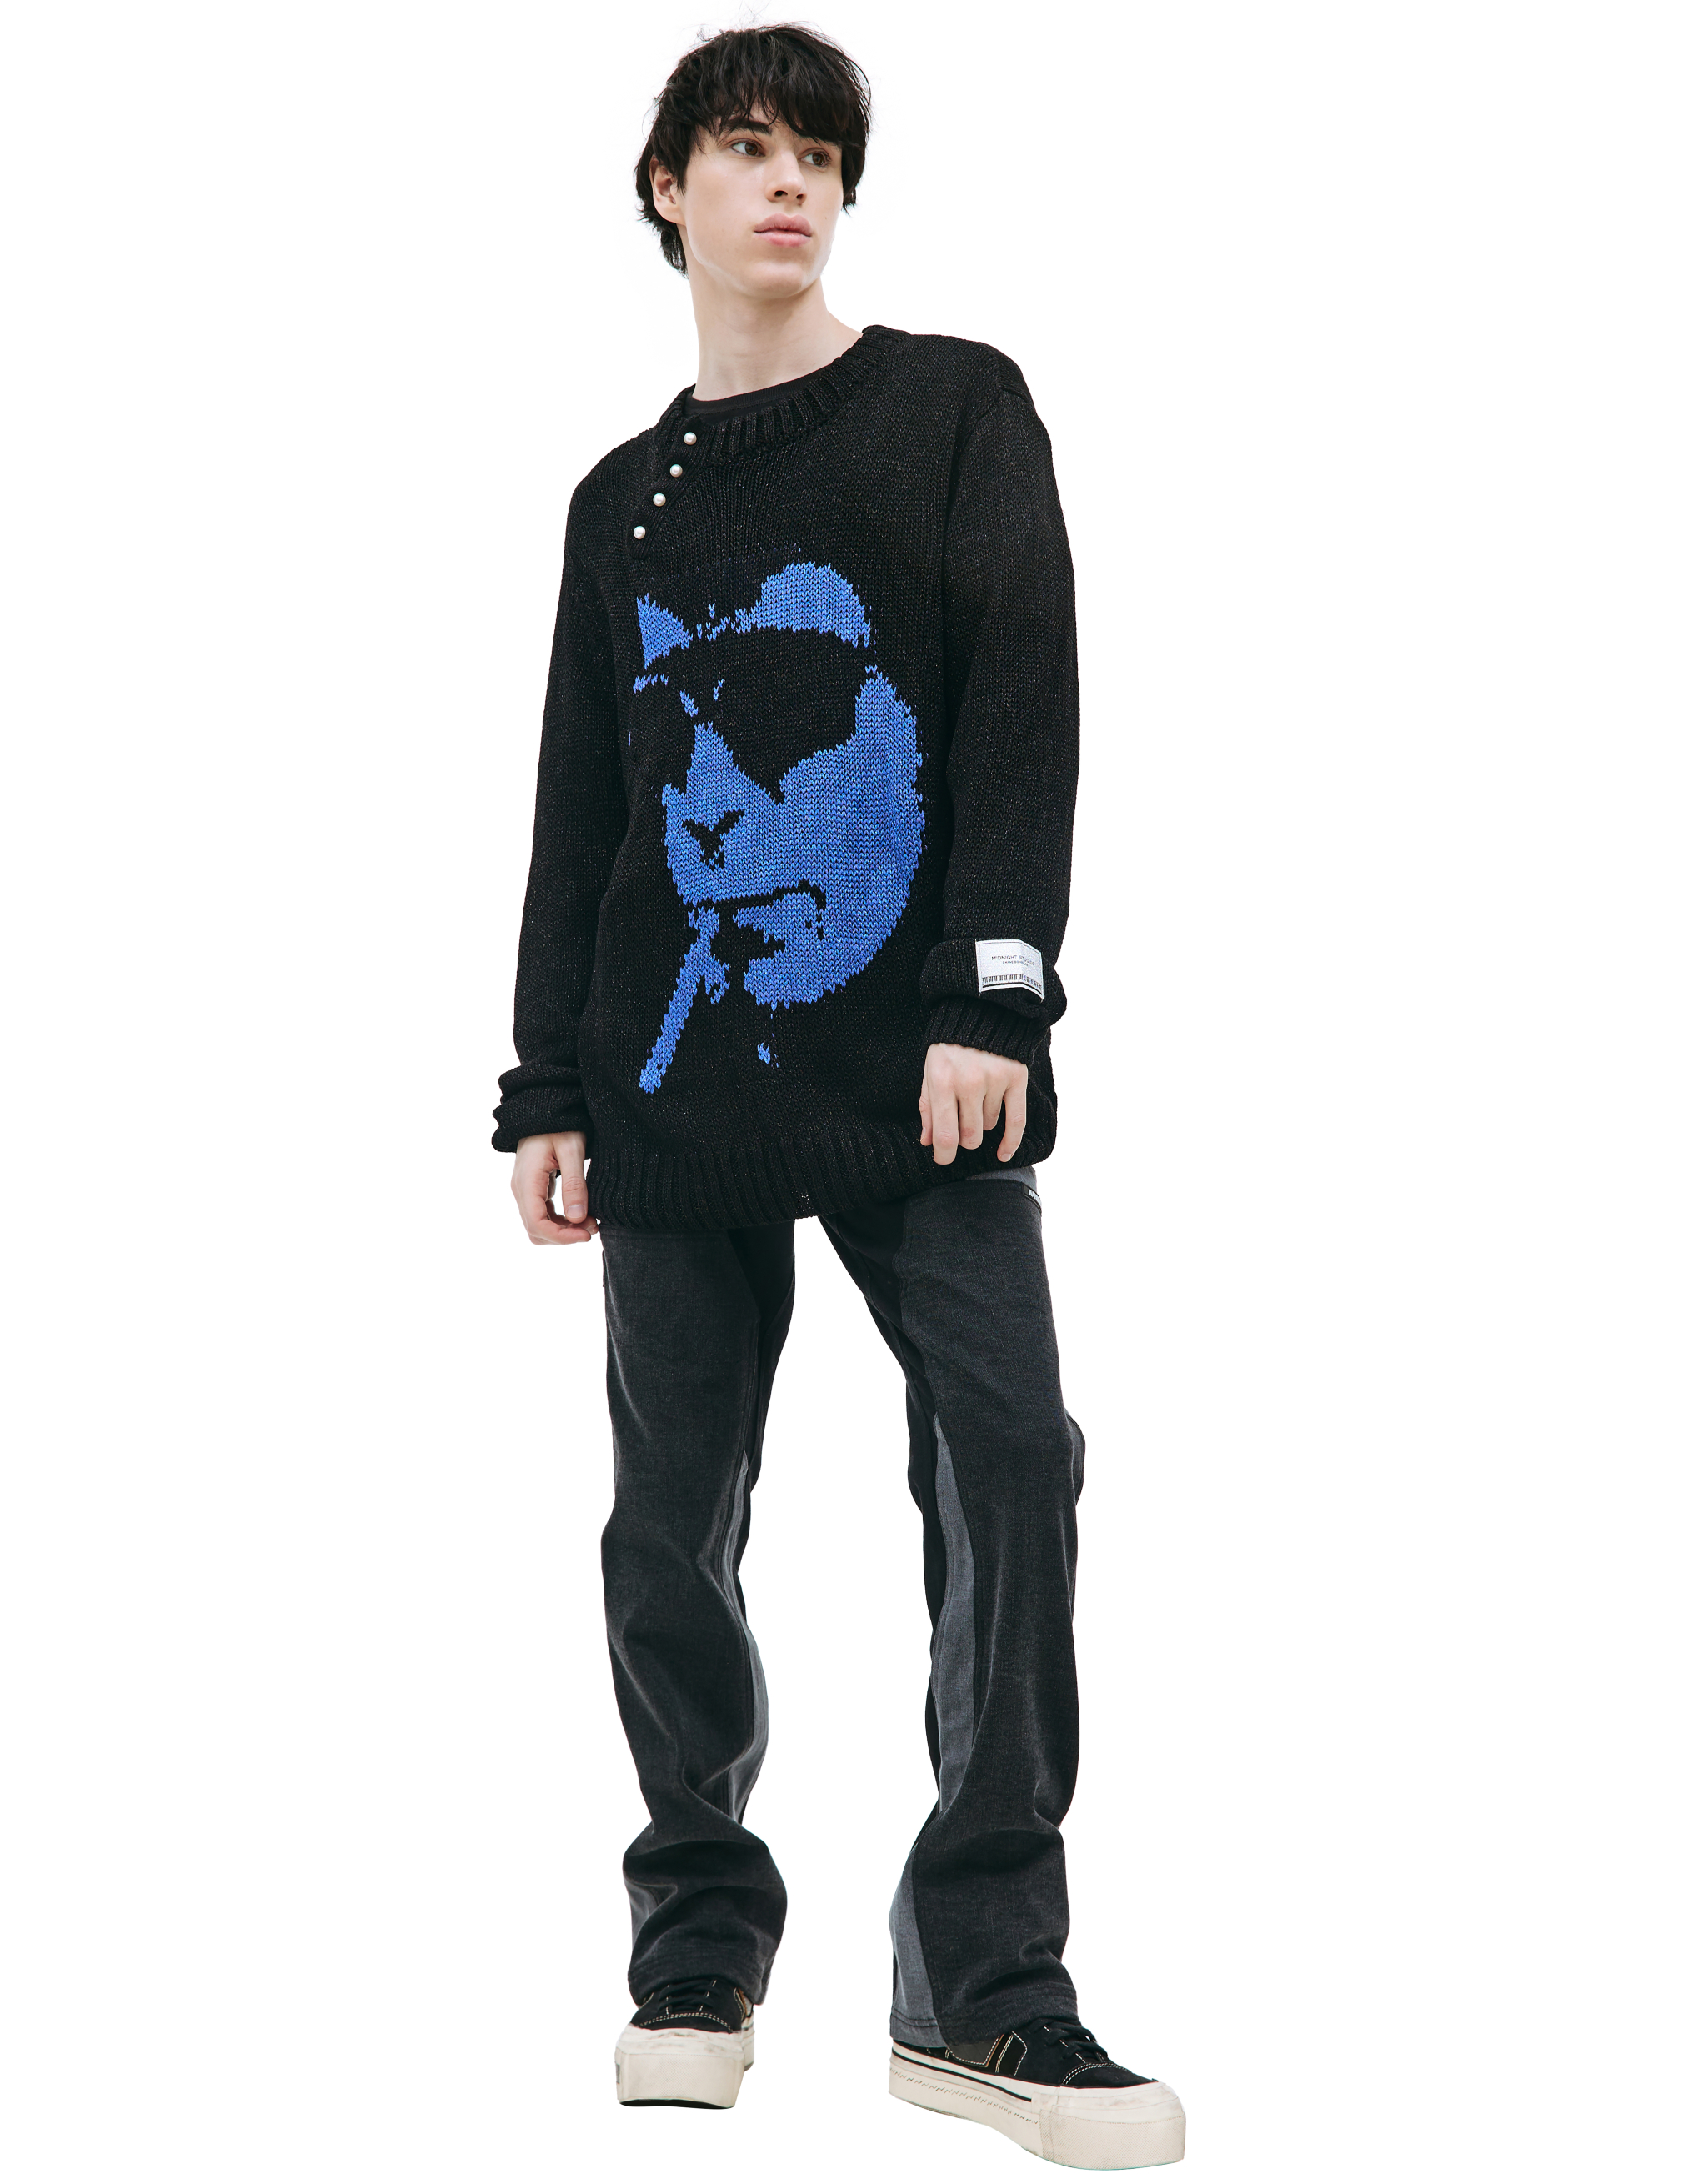 Вязаный свитер с принтом Midnight Studios 823-1701, размер XL;2XL